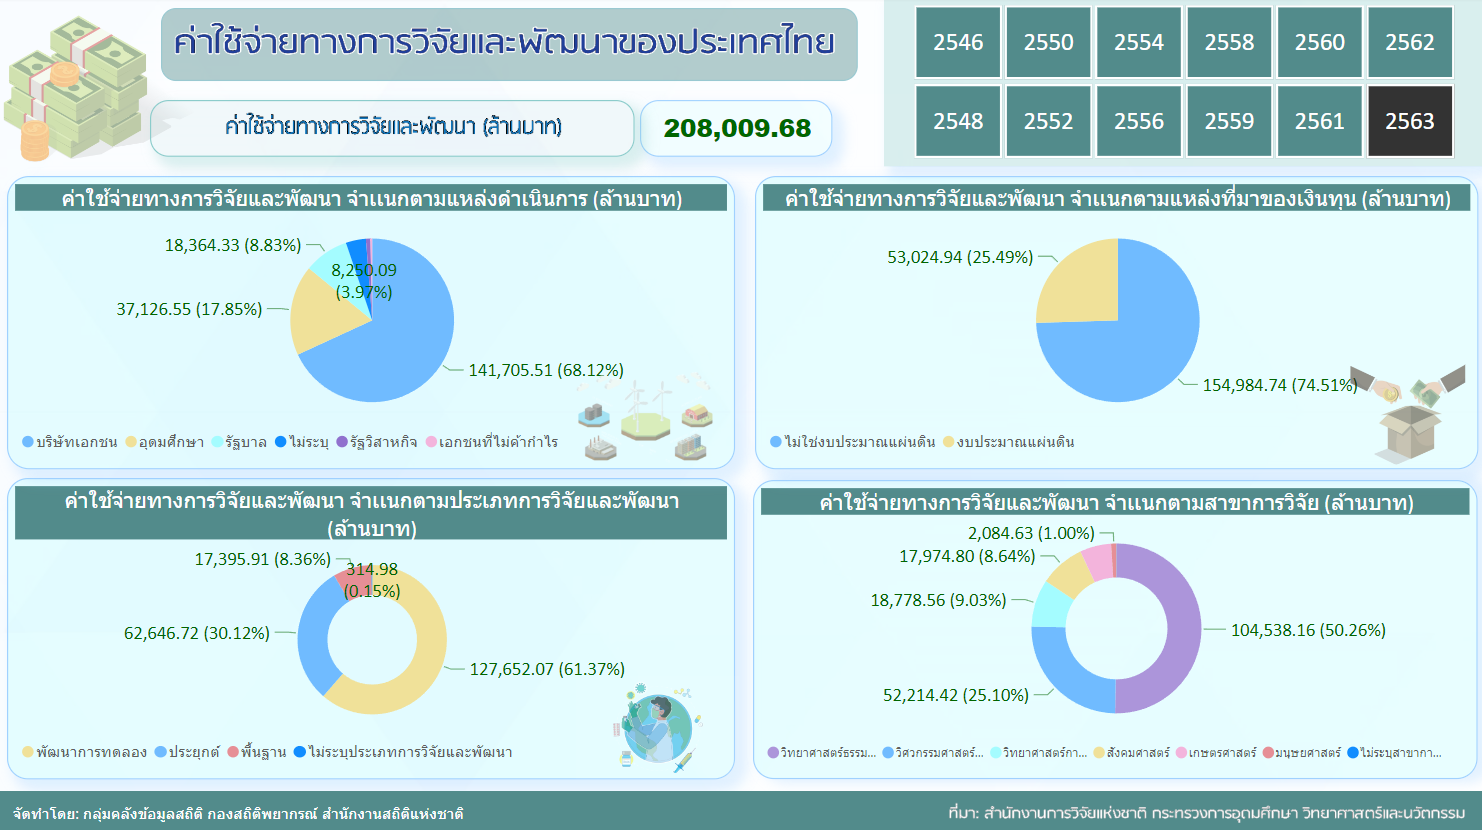 ค่าใช้จ่ายทางการวิจัย และพัฒนาของประเทศไทย